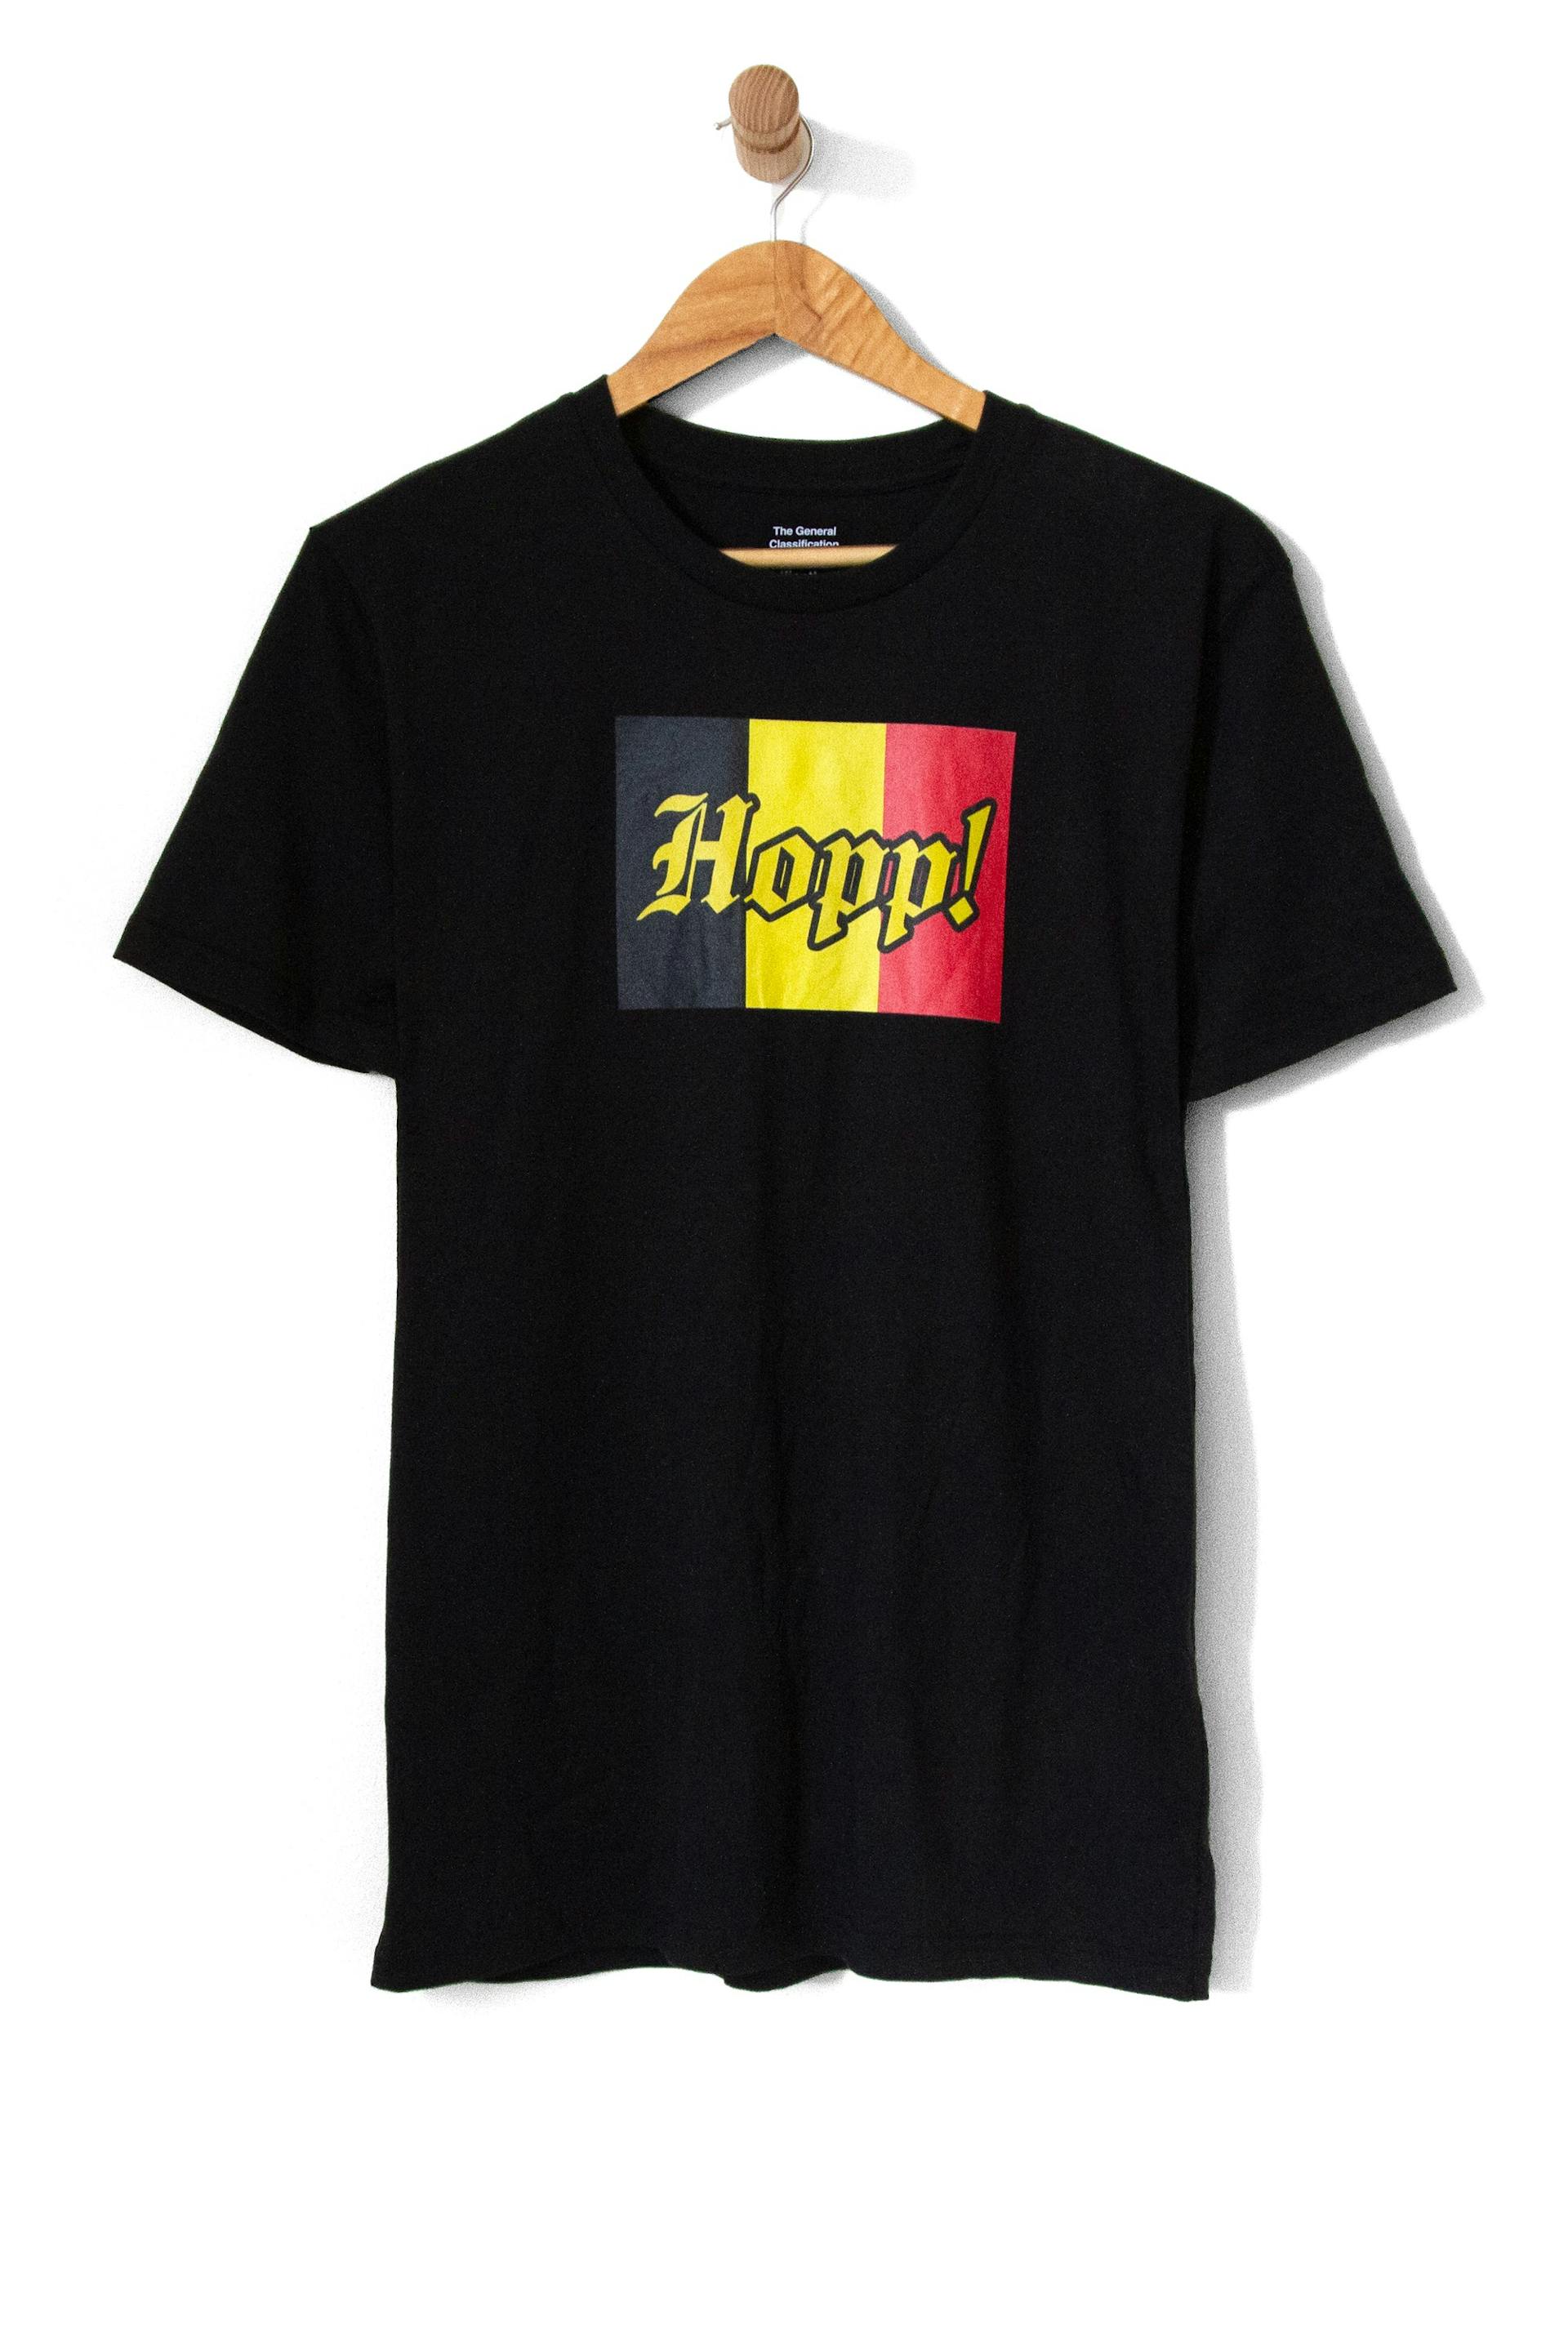 Hopp! Belgium Fan Flag Tee